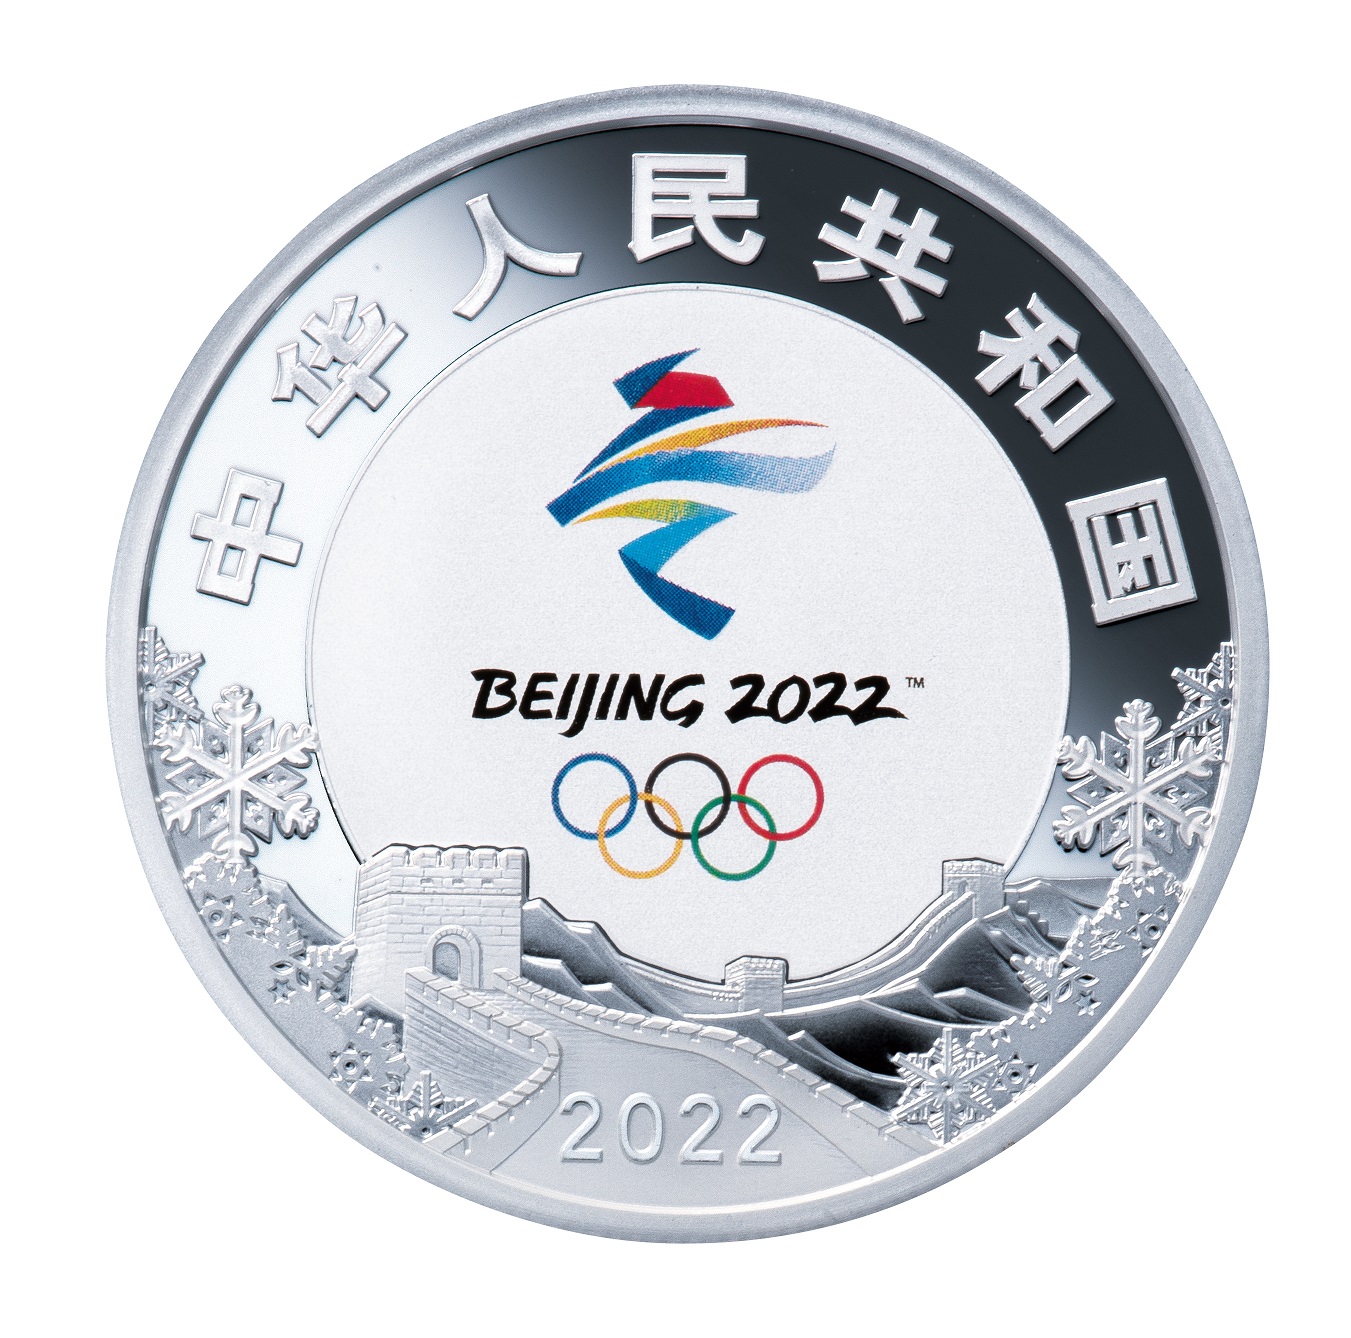 オリンピック冬季競技大会北京2022 公式記念コイン」の取次委託販売の 